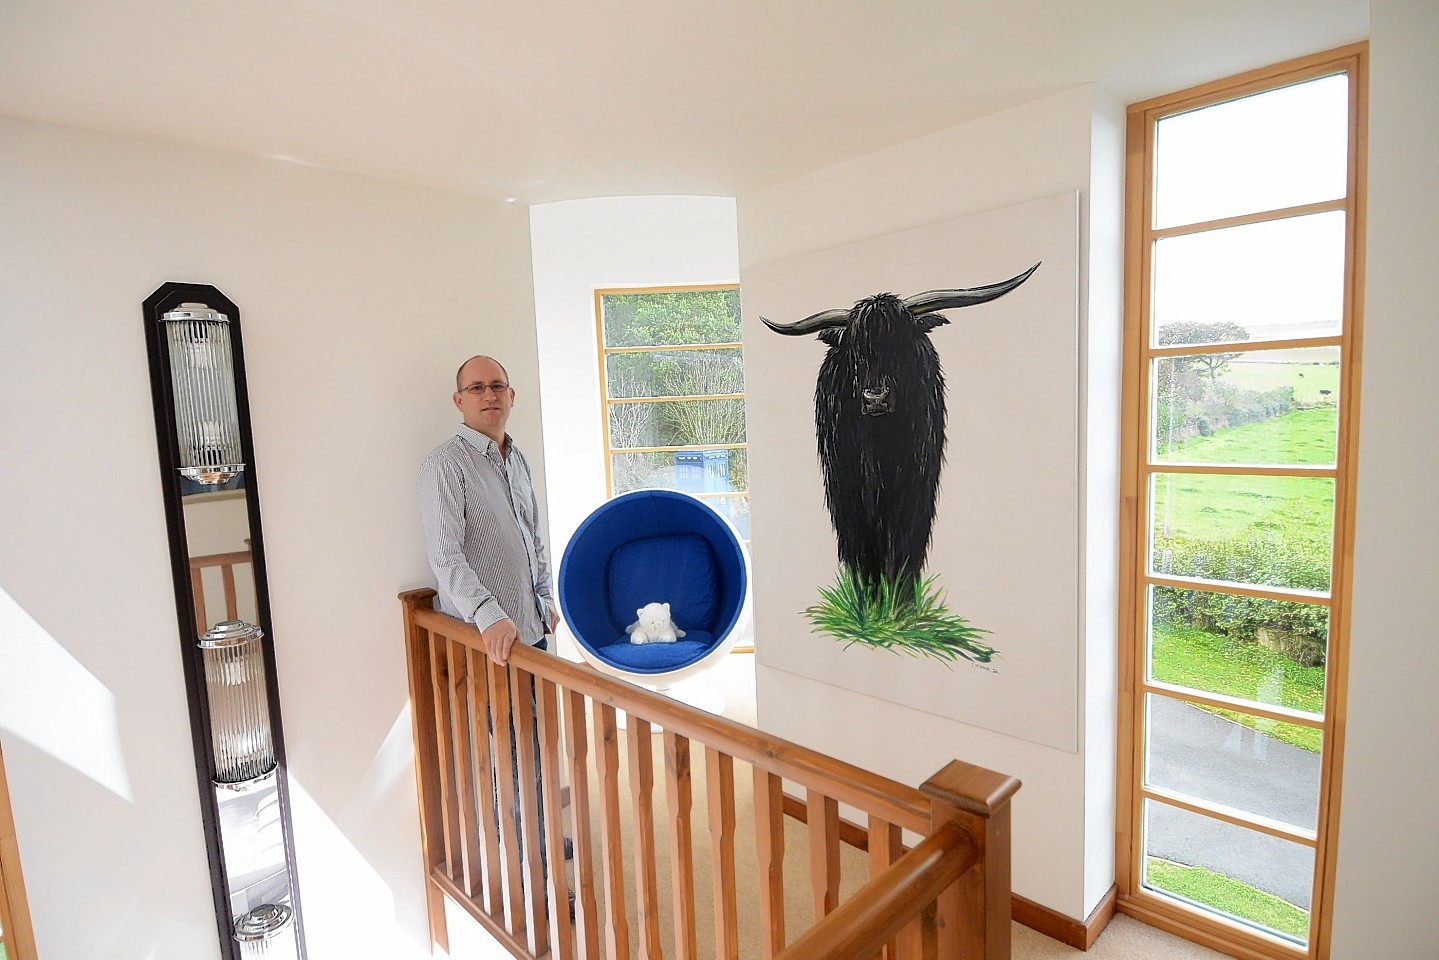 Tony Allen in his Aberdeenshire home